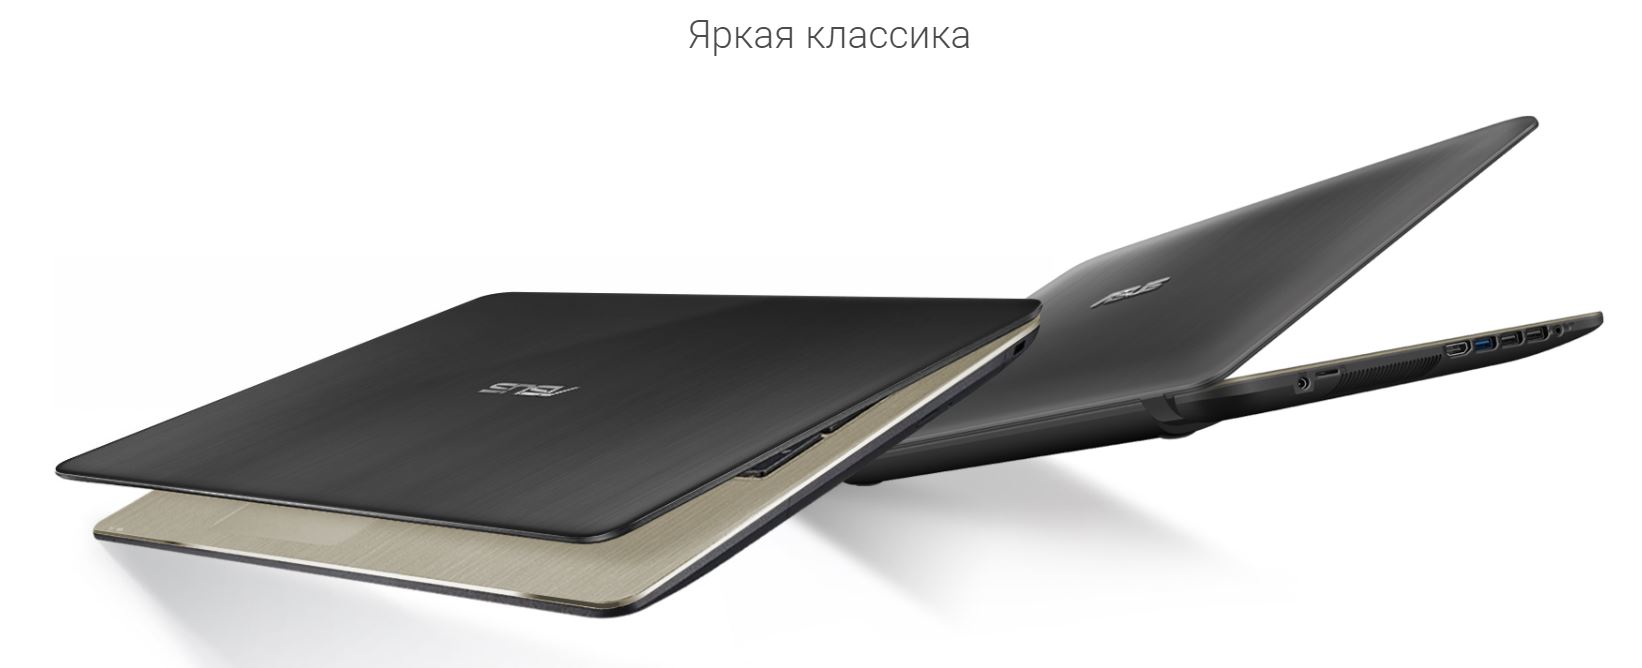 Купить Ноутбук Asus В Иркутске